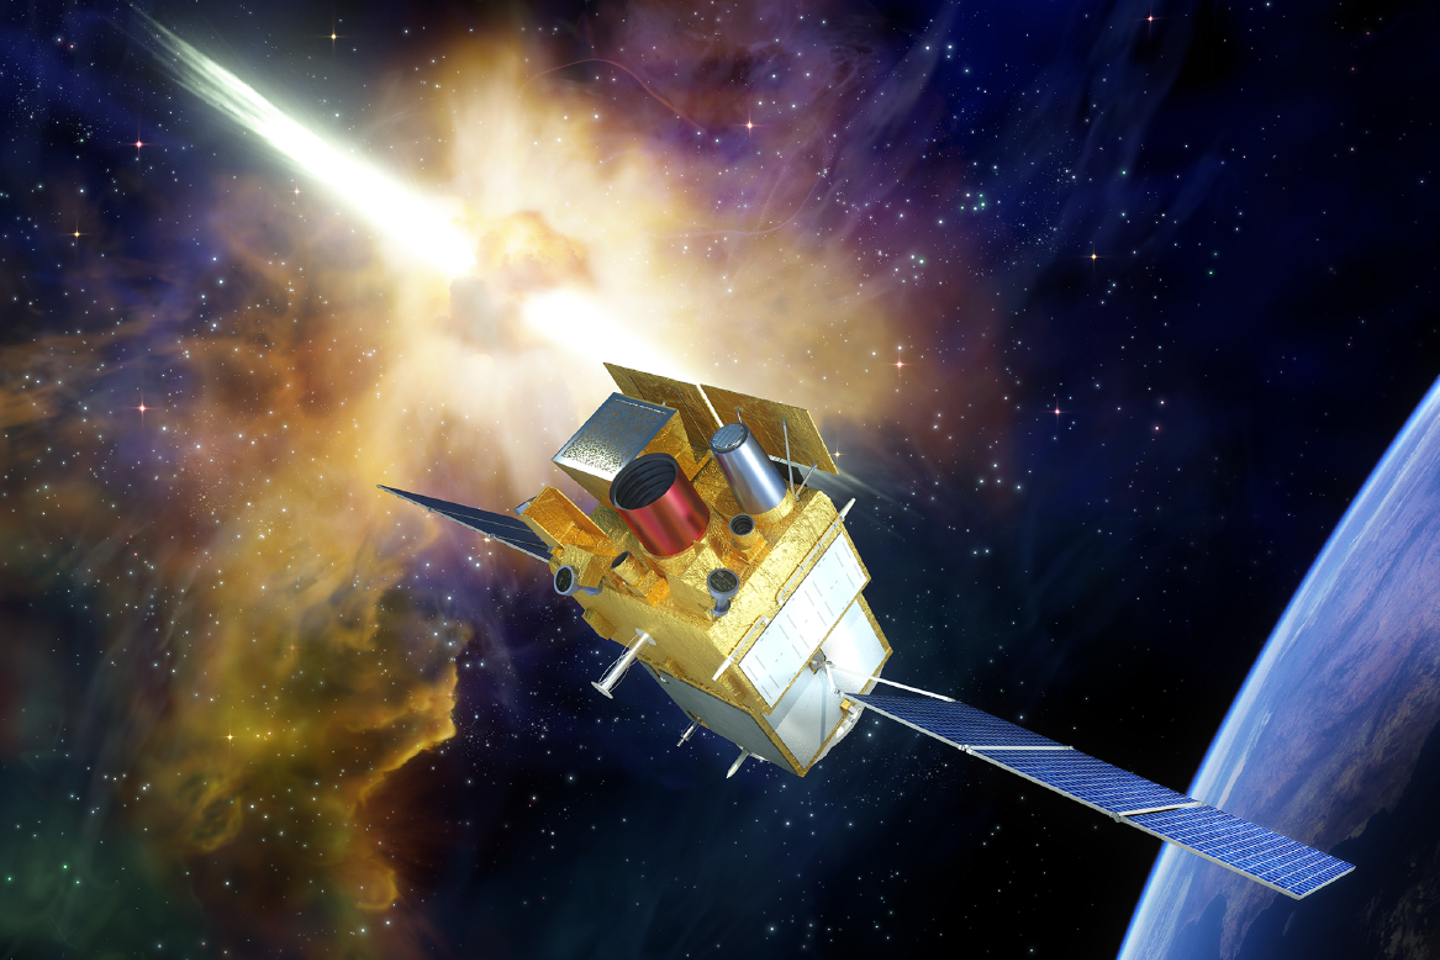 Le télescope SVOM arrive en orbite, pour détecter et étudier les plus grandes explosions de l'Univers